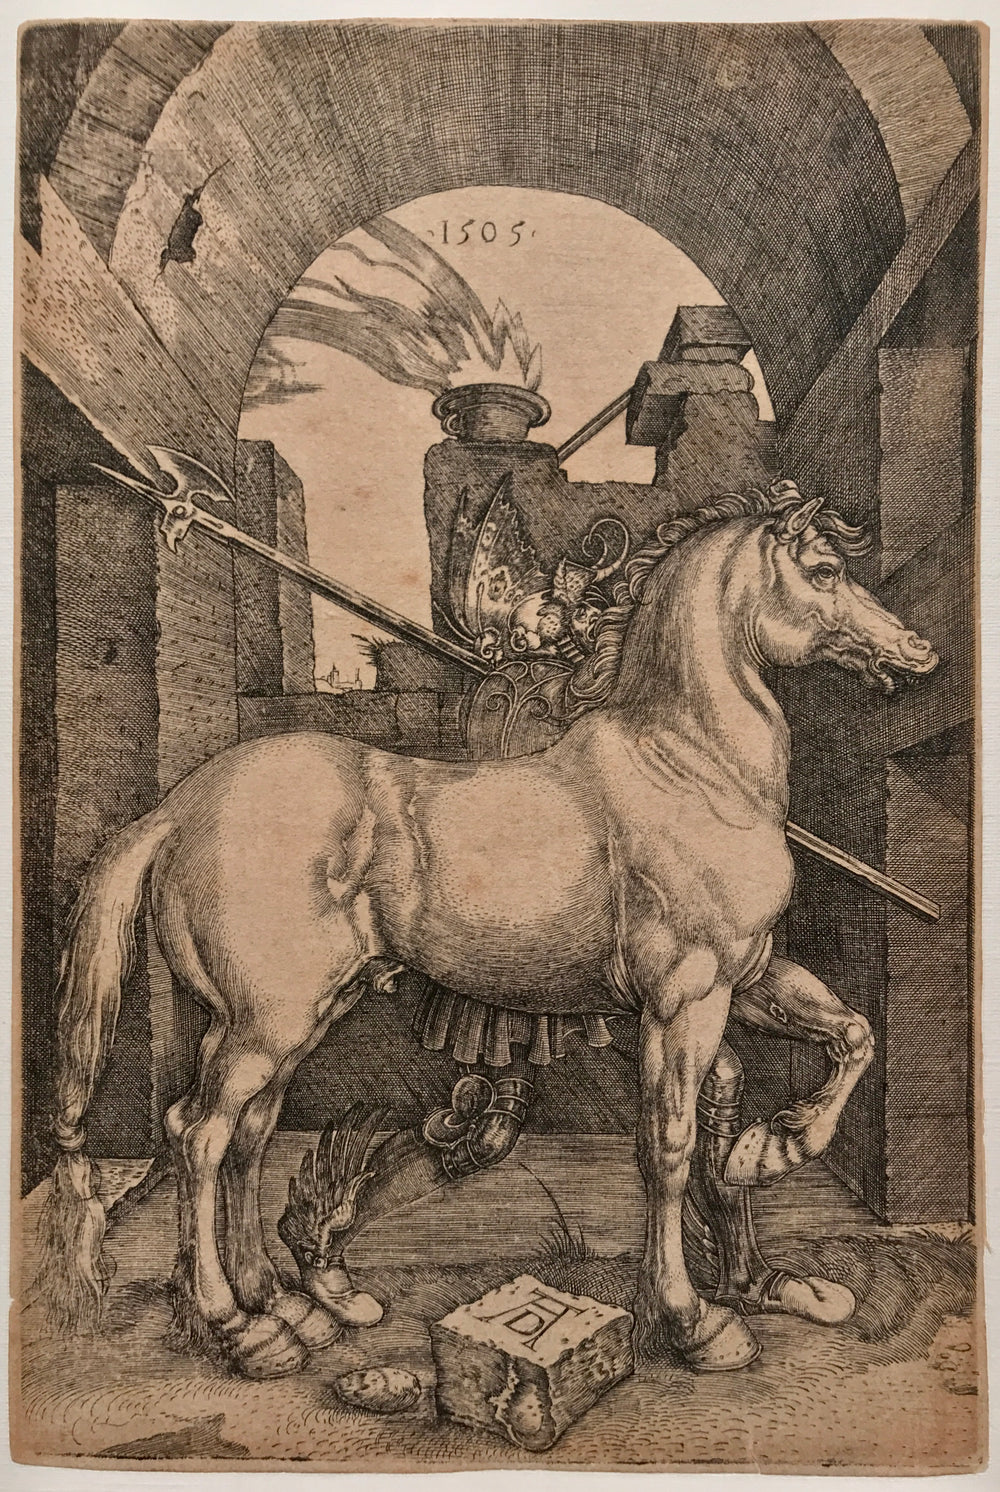 The small Horse after Albrecht Dürer Engraving